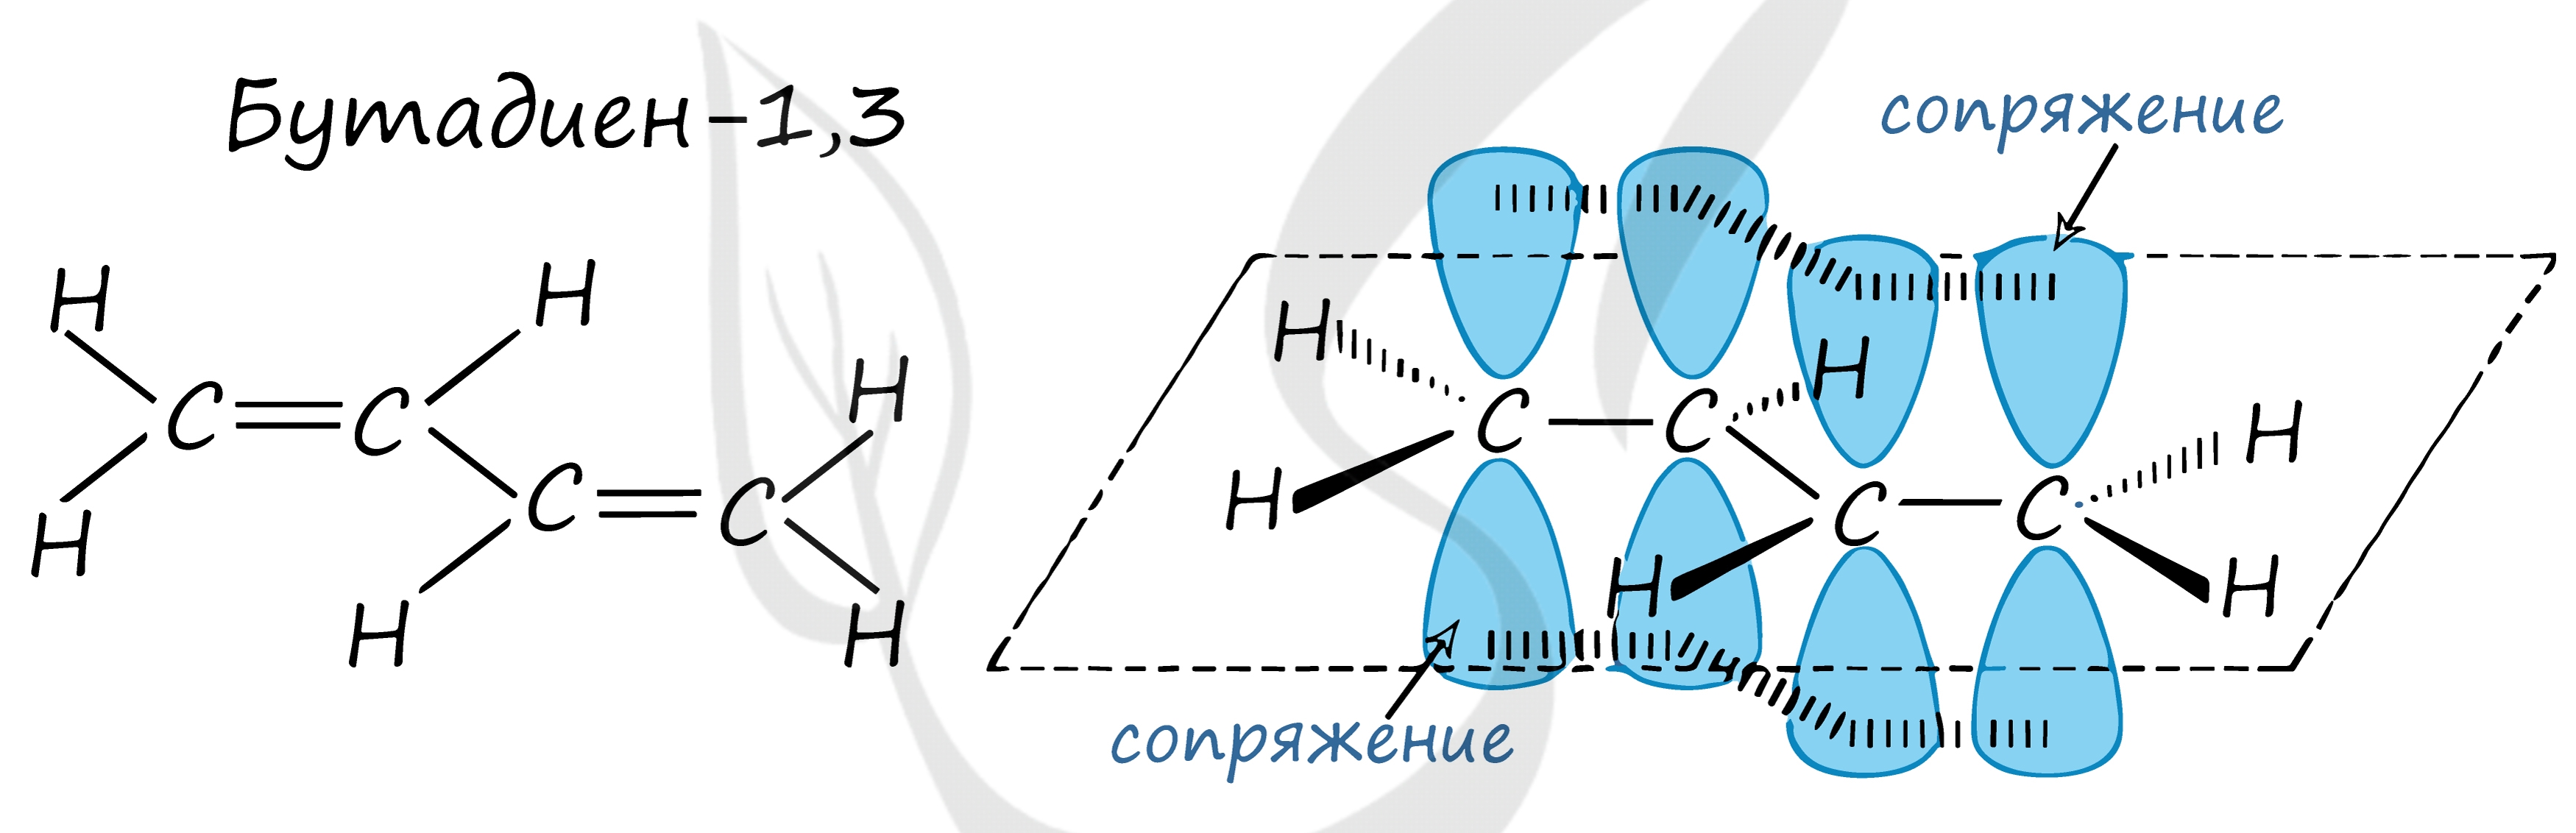 Сопряженные связи в молекулах. Строение молекулы бутадиена 1.3. Строение молекулы бутадиена. Электронное строение молекулы бутадиена-1.3. Схема бутадиена 1.3.